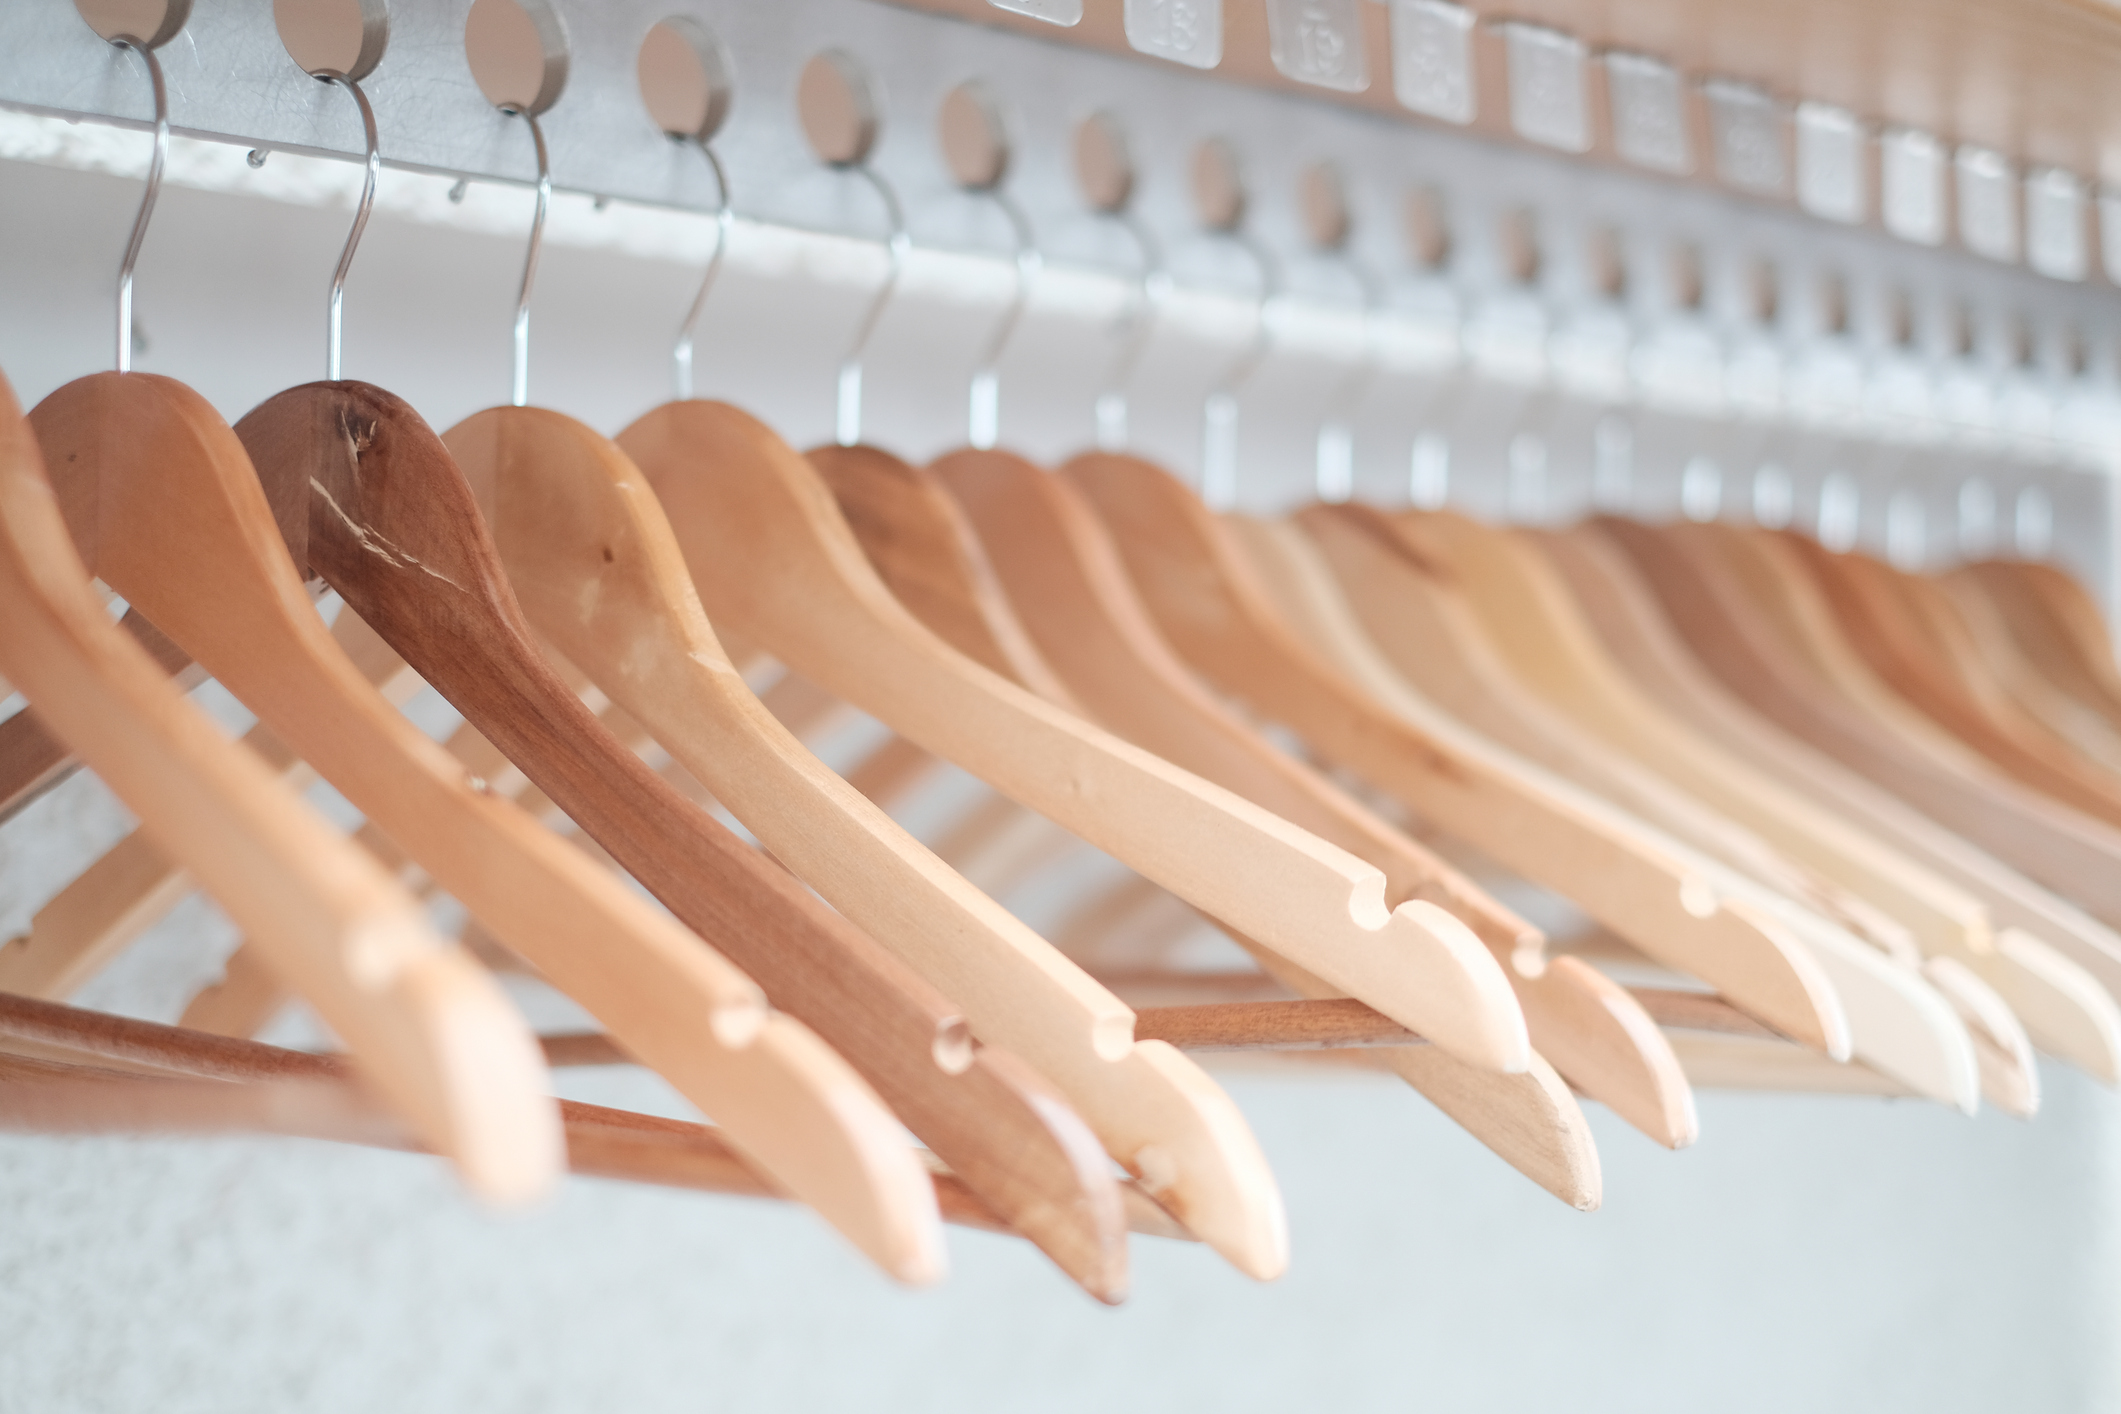 Може да използвате различни цветове за закачалките, а не еднакви, за да разграничите летните от зимните дрехи. Освен това ще внесете много настроение в гардероба, особено ако е на децата ви.